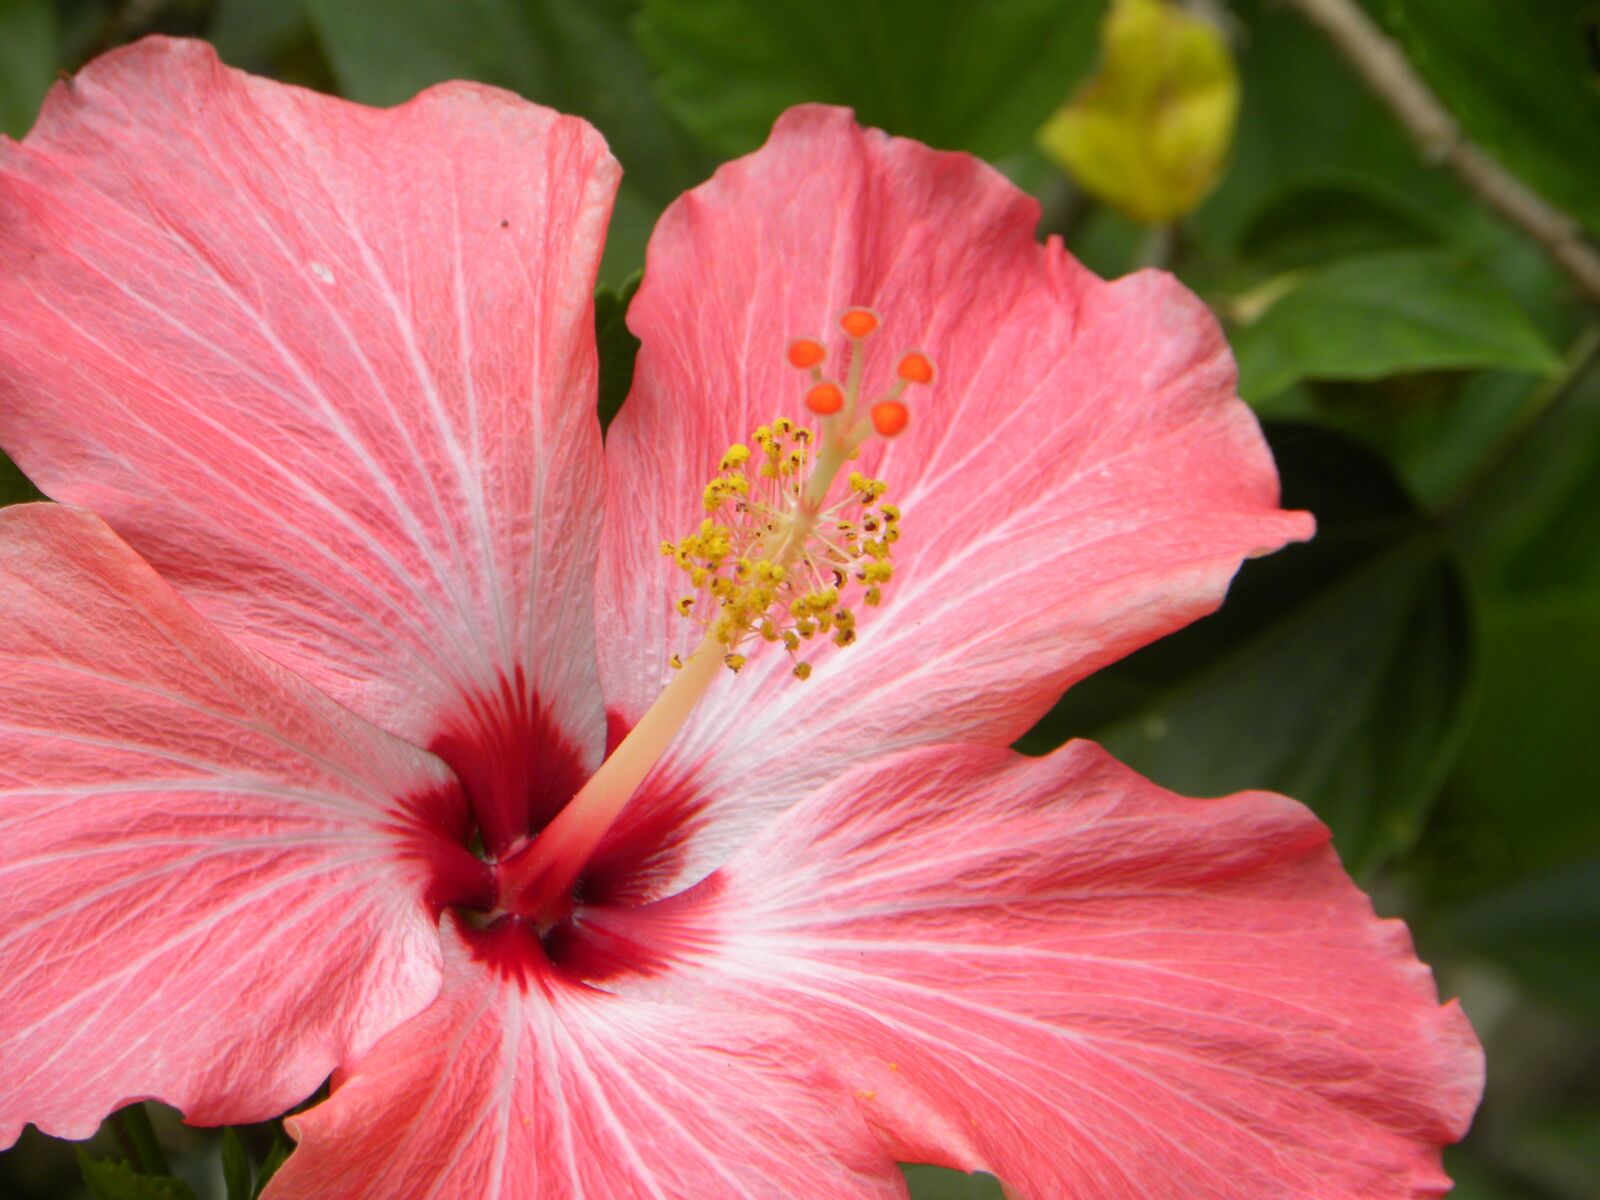 Nikon Coolpix P90 sample photo. Hibiscus, pink, nature photography